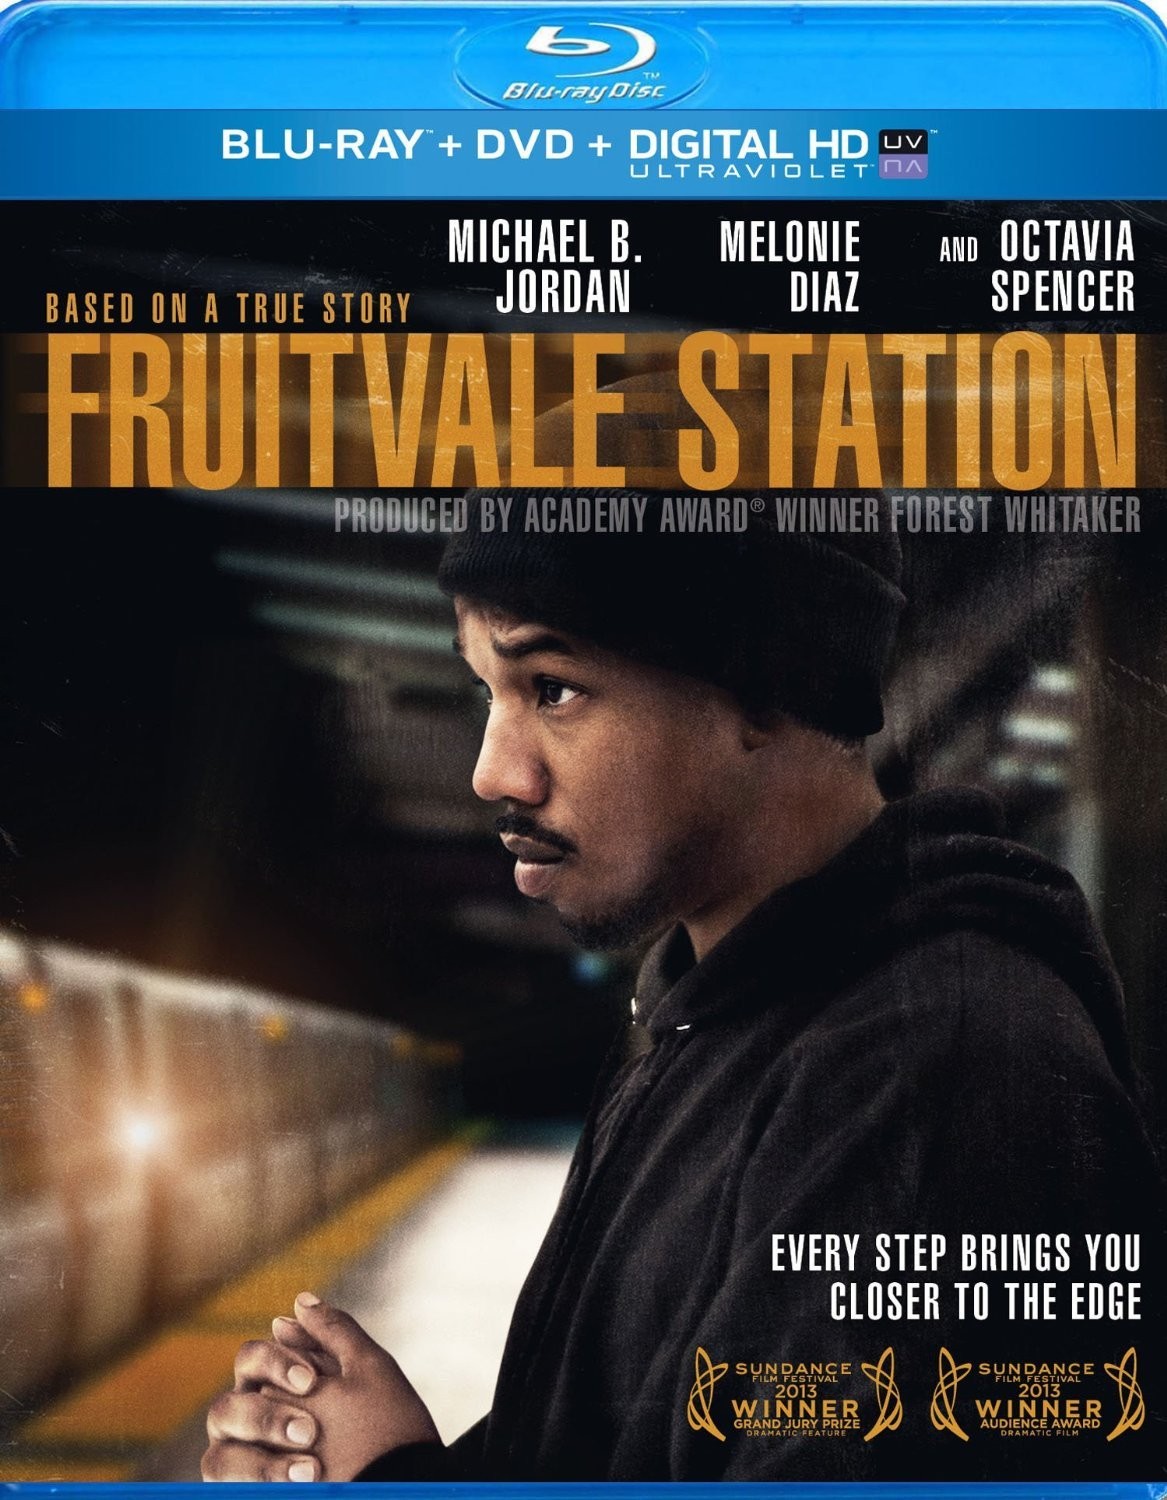  弗鲁特维尔车站 [冲刺今年奥斯卡电影之一] Fruitvale Station (2013) 又名水果谷车站    49-031 